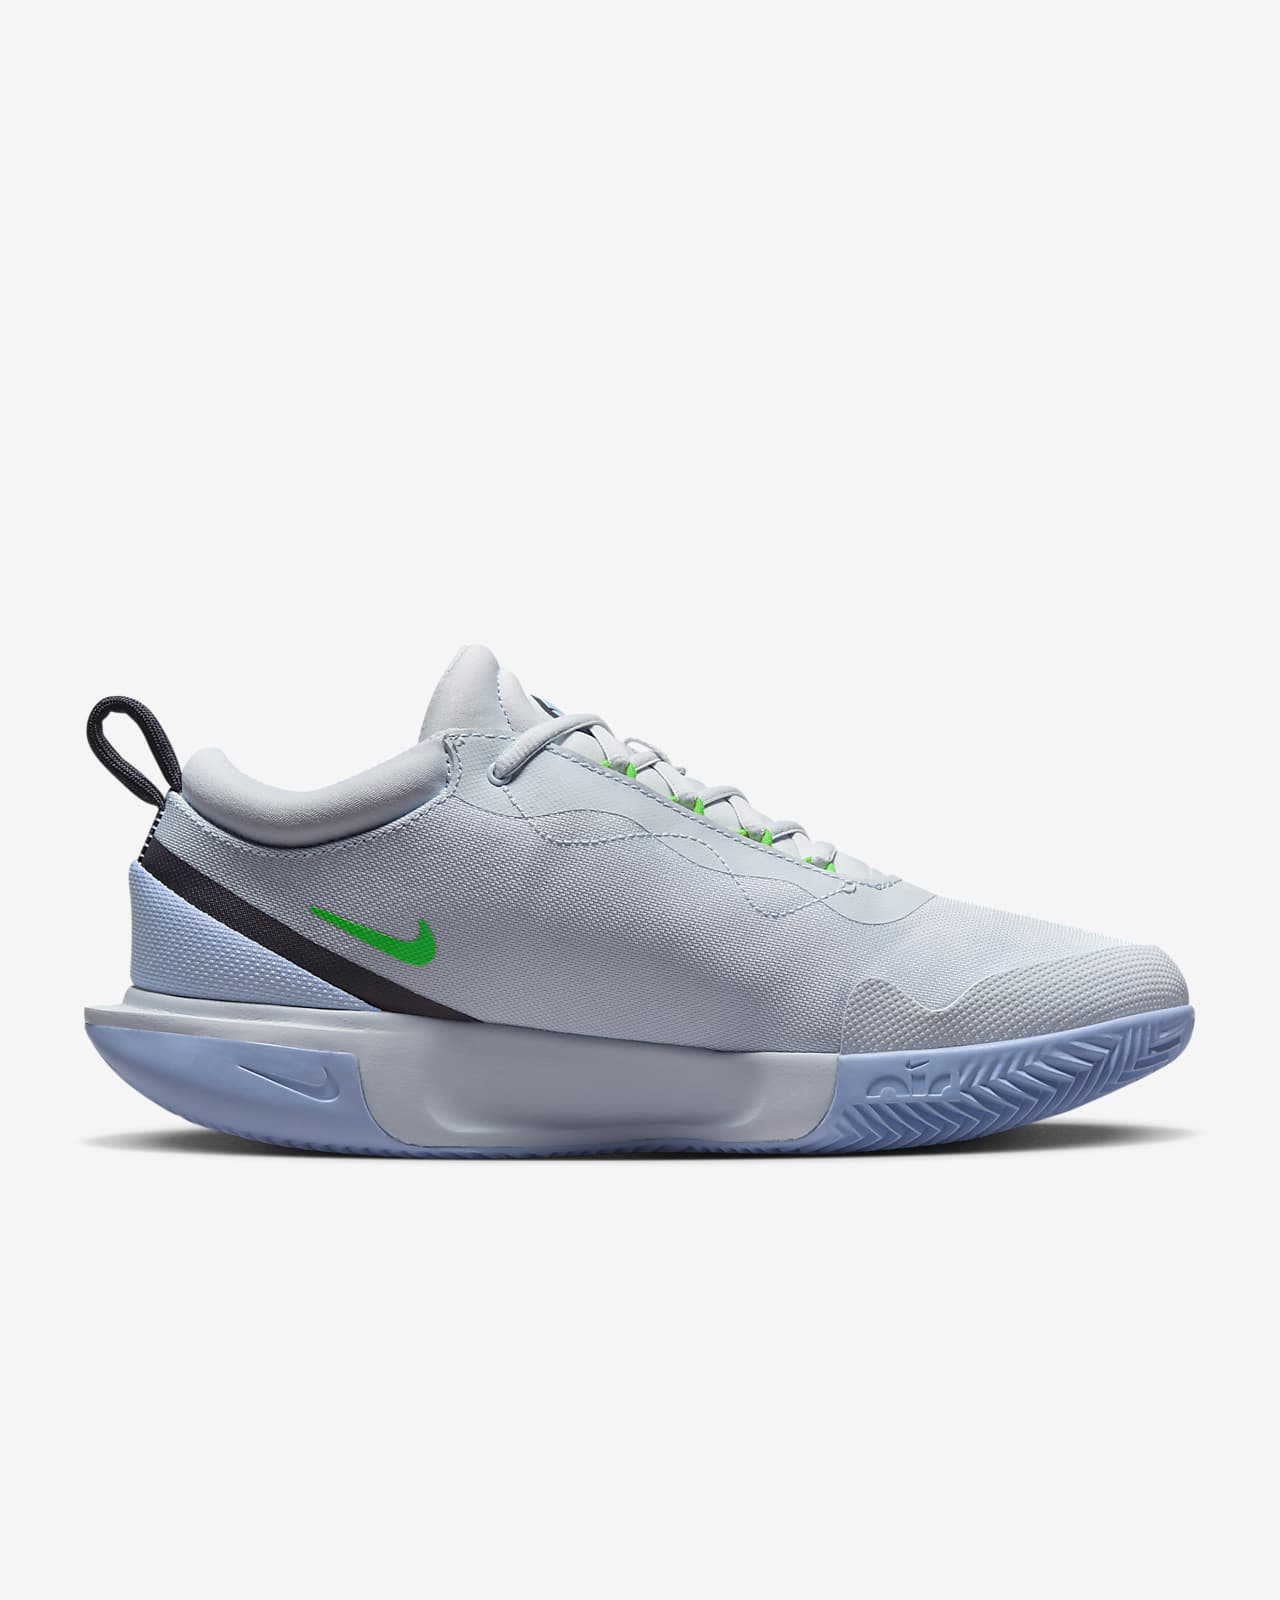 NikeCourt Zoom Pro Men's Clay Court Tennis Shoes. Nike LU